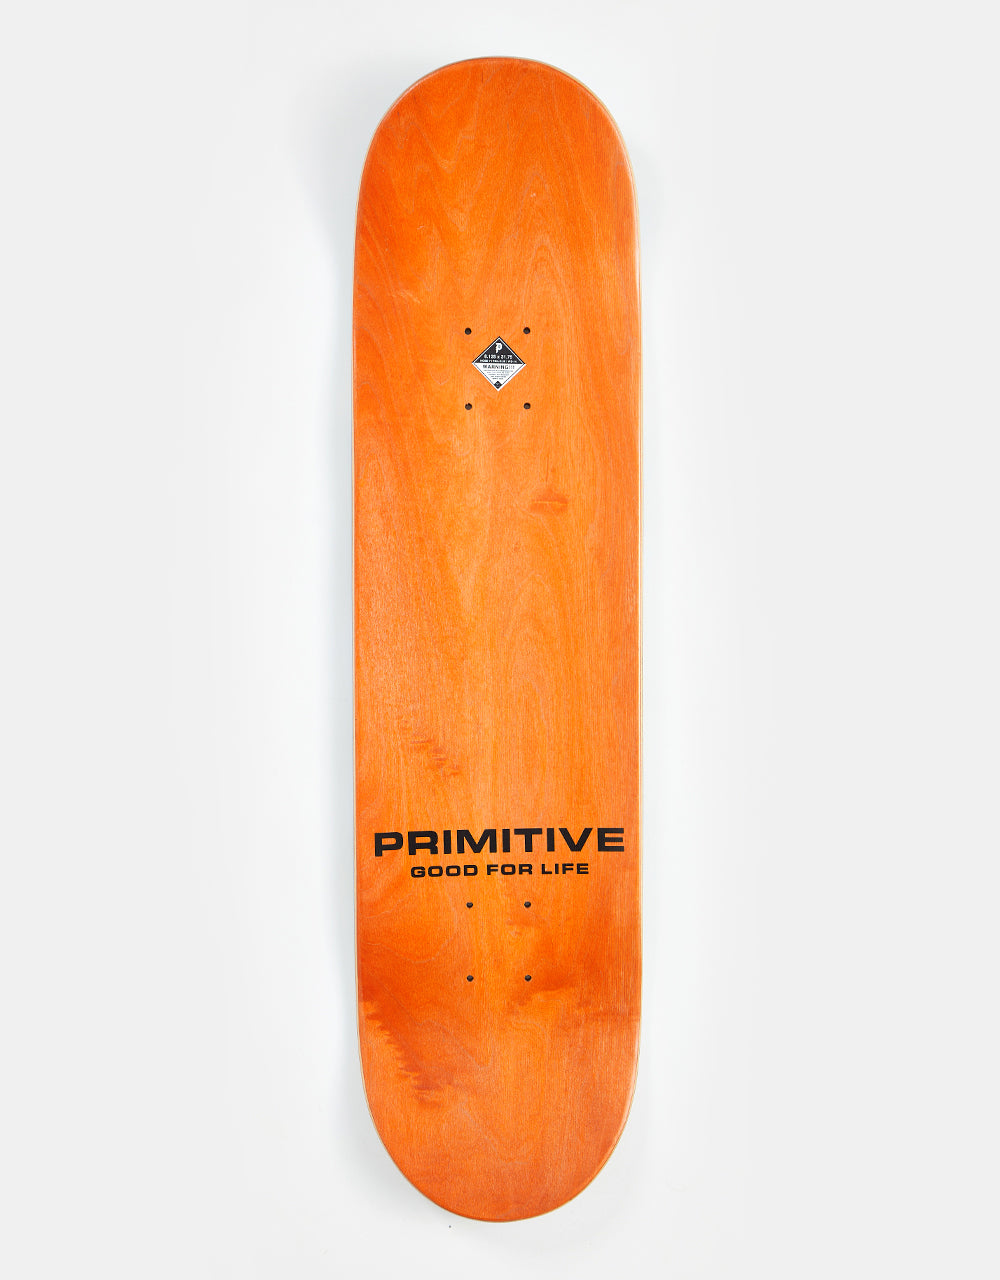 Primitive Gillet Portal Skateboard Deck - 8.125"